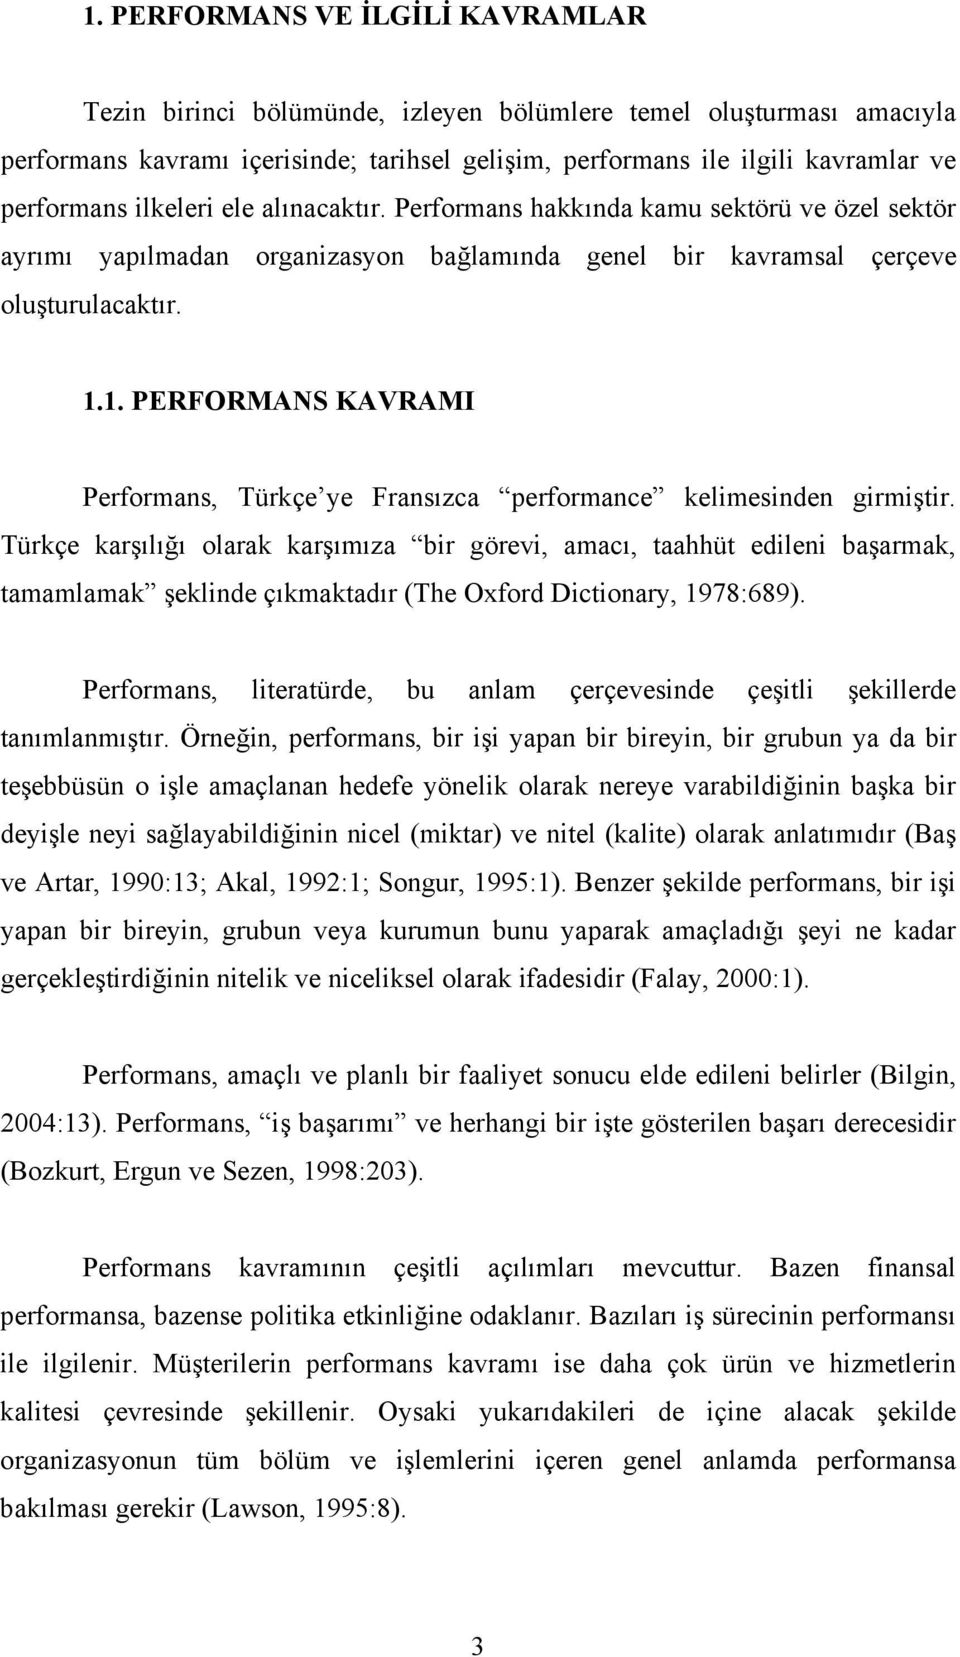 1. PERFORMANS KAVRAMI Performans, Türkçe ye Fransızca performance kelimesinden girmiştir.